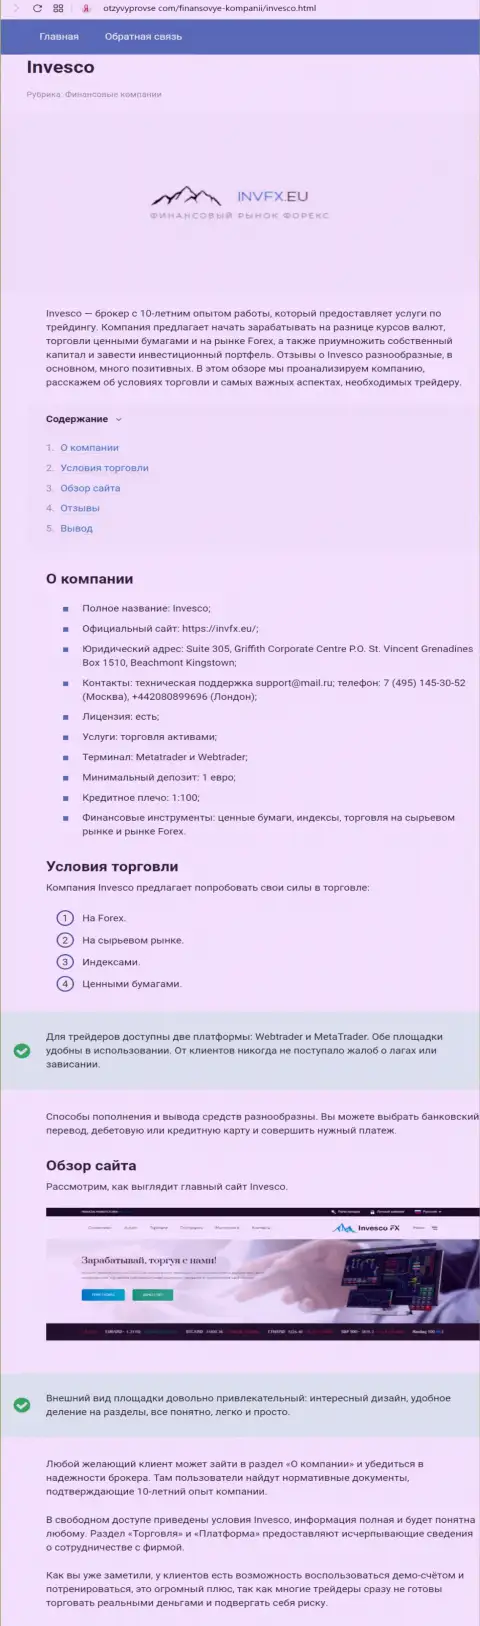 Детальная инфа о форекс брокере ИНВФИкс на полях интернет-портала otzyvyprovse com